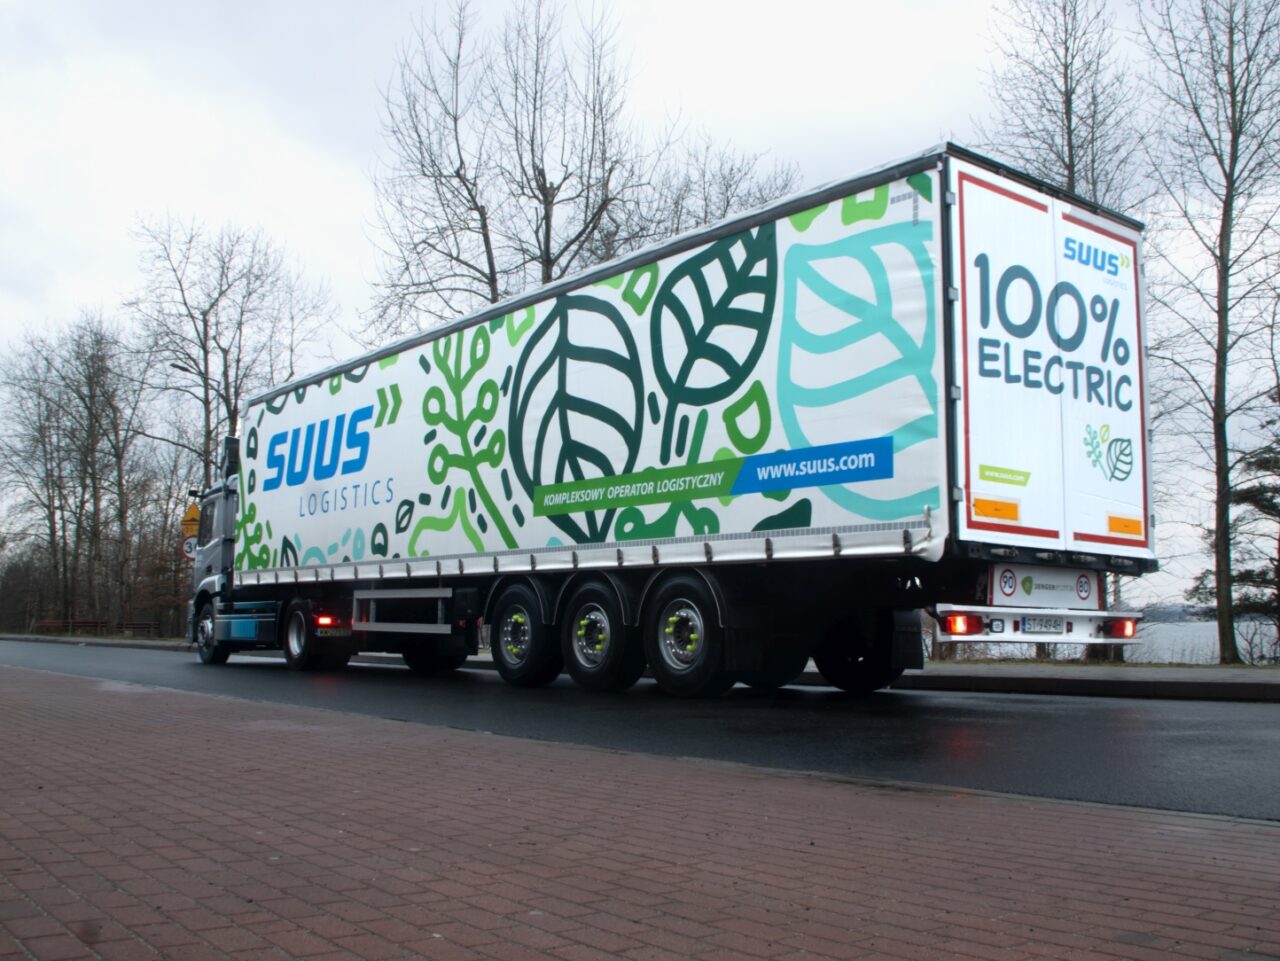 Ciężarówka SUUS Logistics z naczepą w barwach firmowych i napisem "100% ELECTRIC" zaparkowana na poboczu drogi.